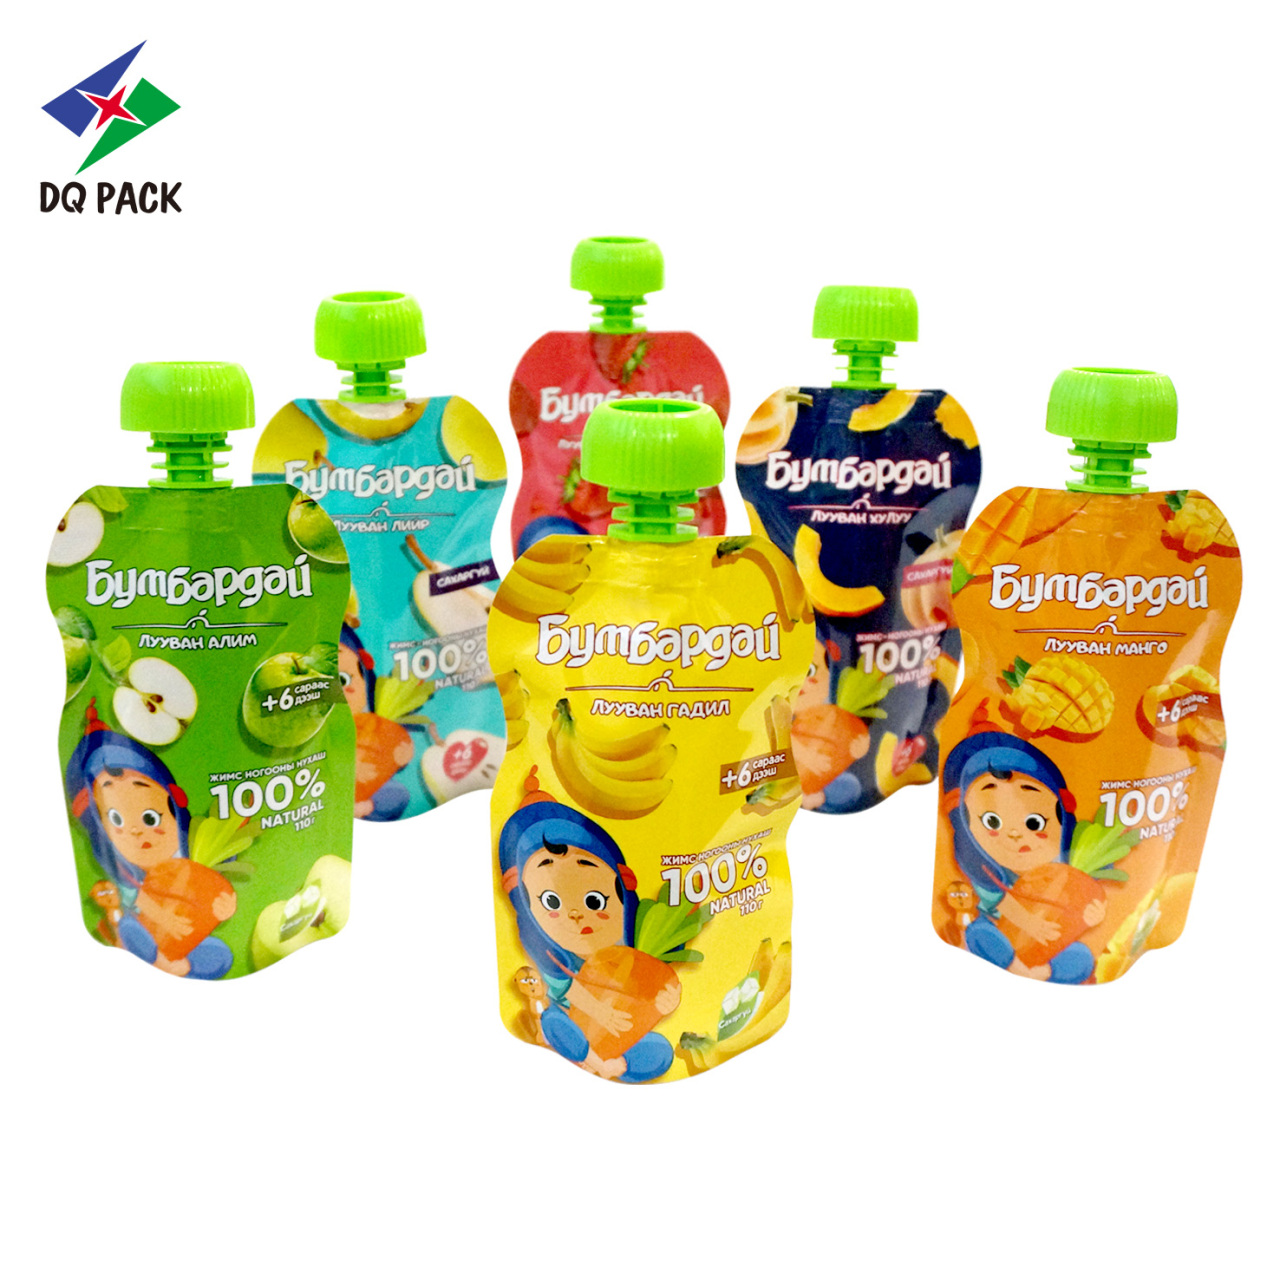 广东丹青印务有限公司生产销售异形自立吸嘴袋果汁饮料果冻吸嘴袋等印刷复合包装产品